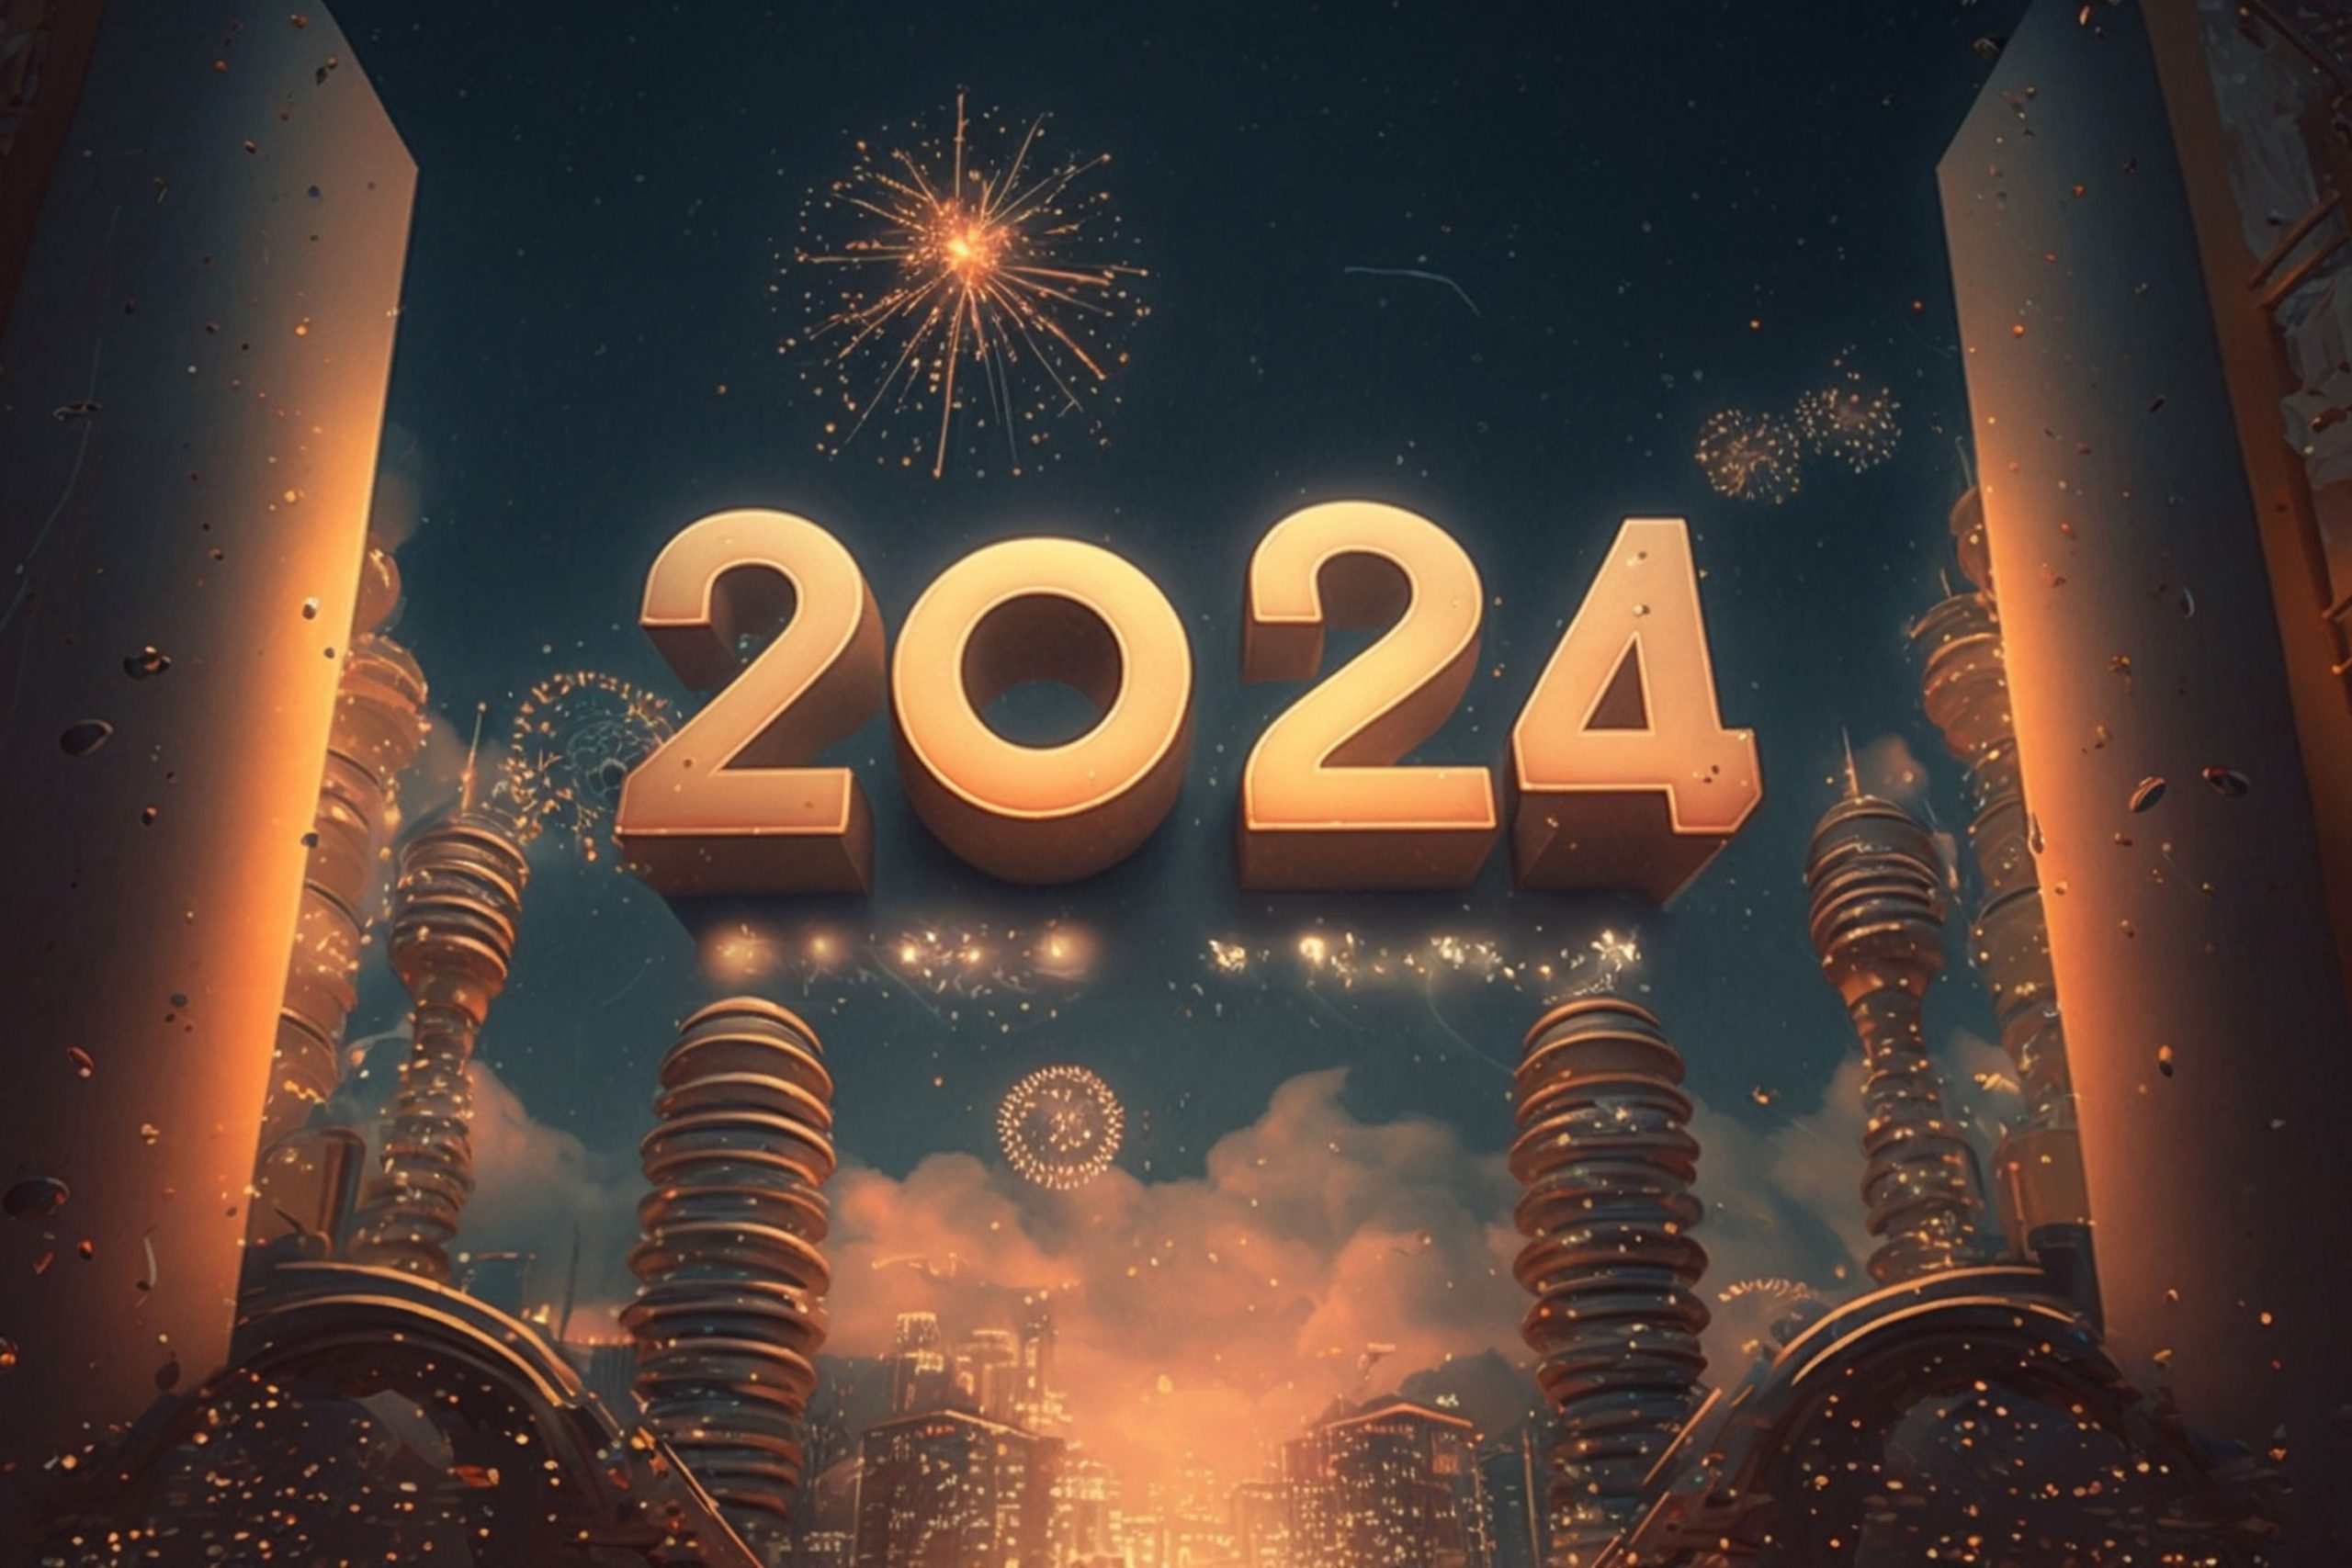 Обои 2024 г. Будущий год 2024. Новый год 2024. Новый год 2024 картинки. Обои 2024.